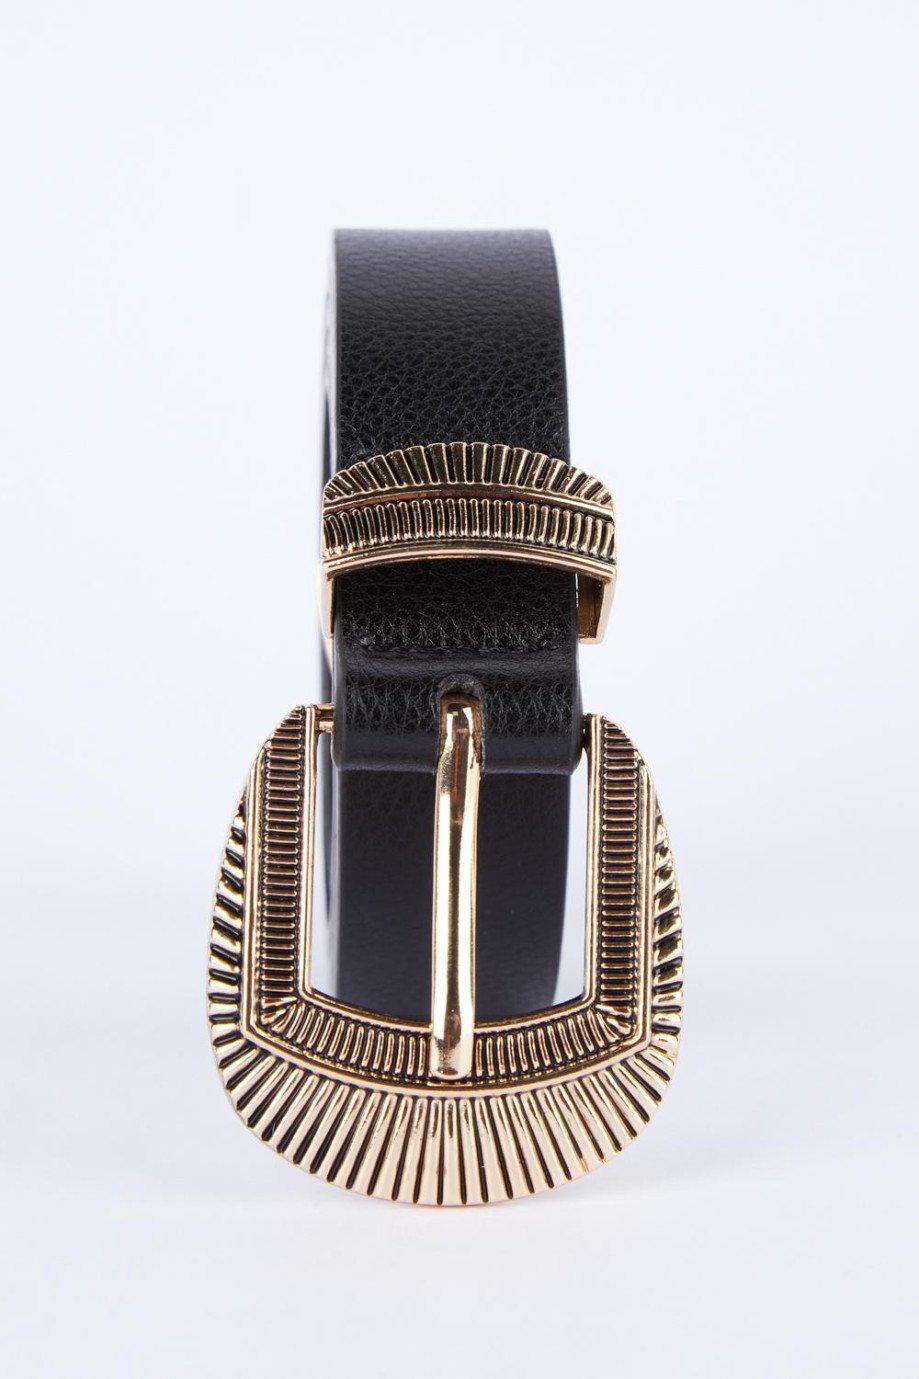 Cinturón negro con hebilla, trabilla y puntera doradas con grabados